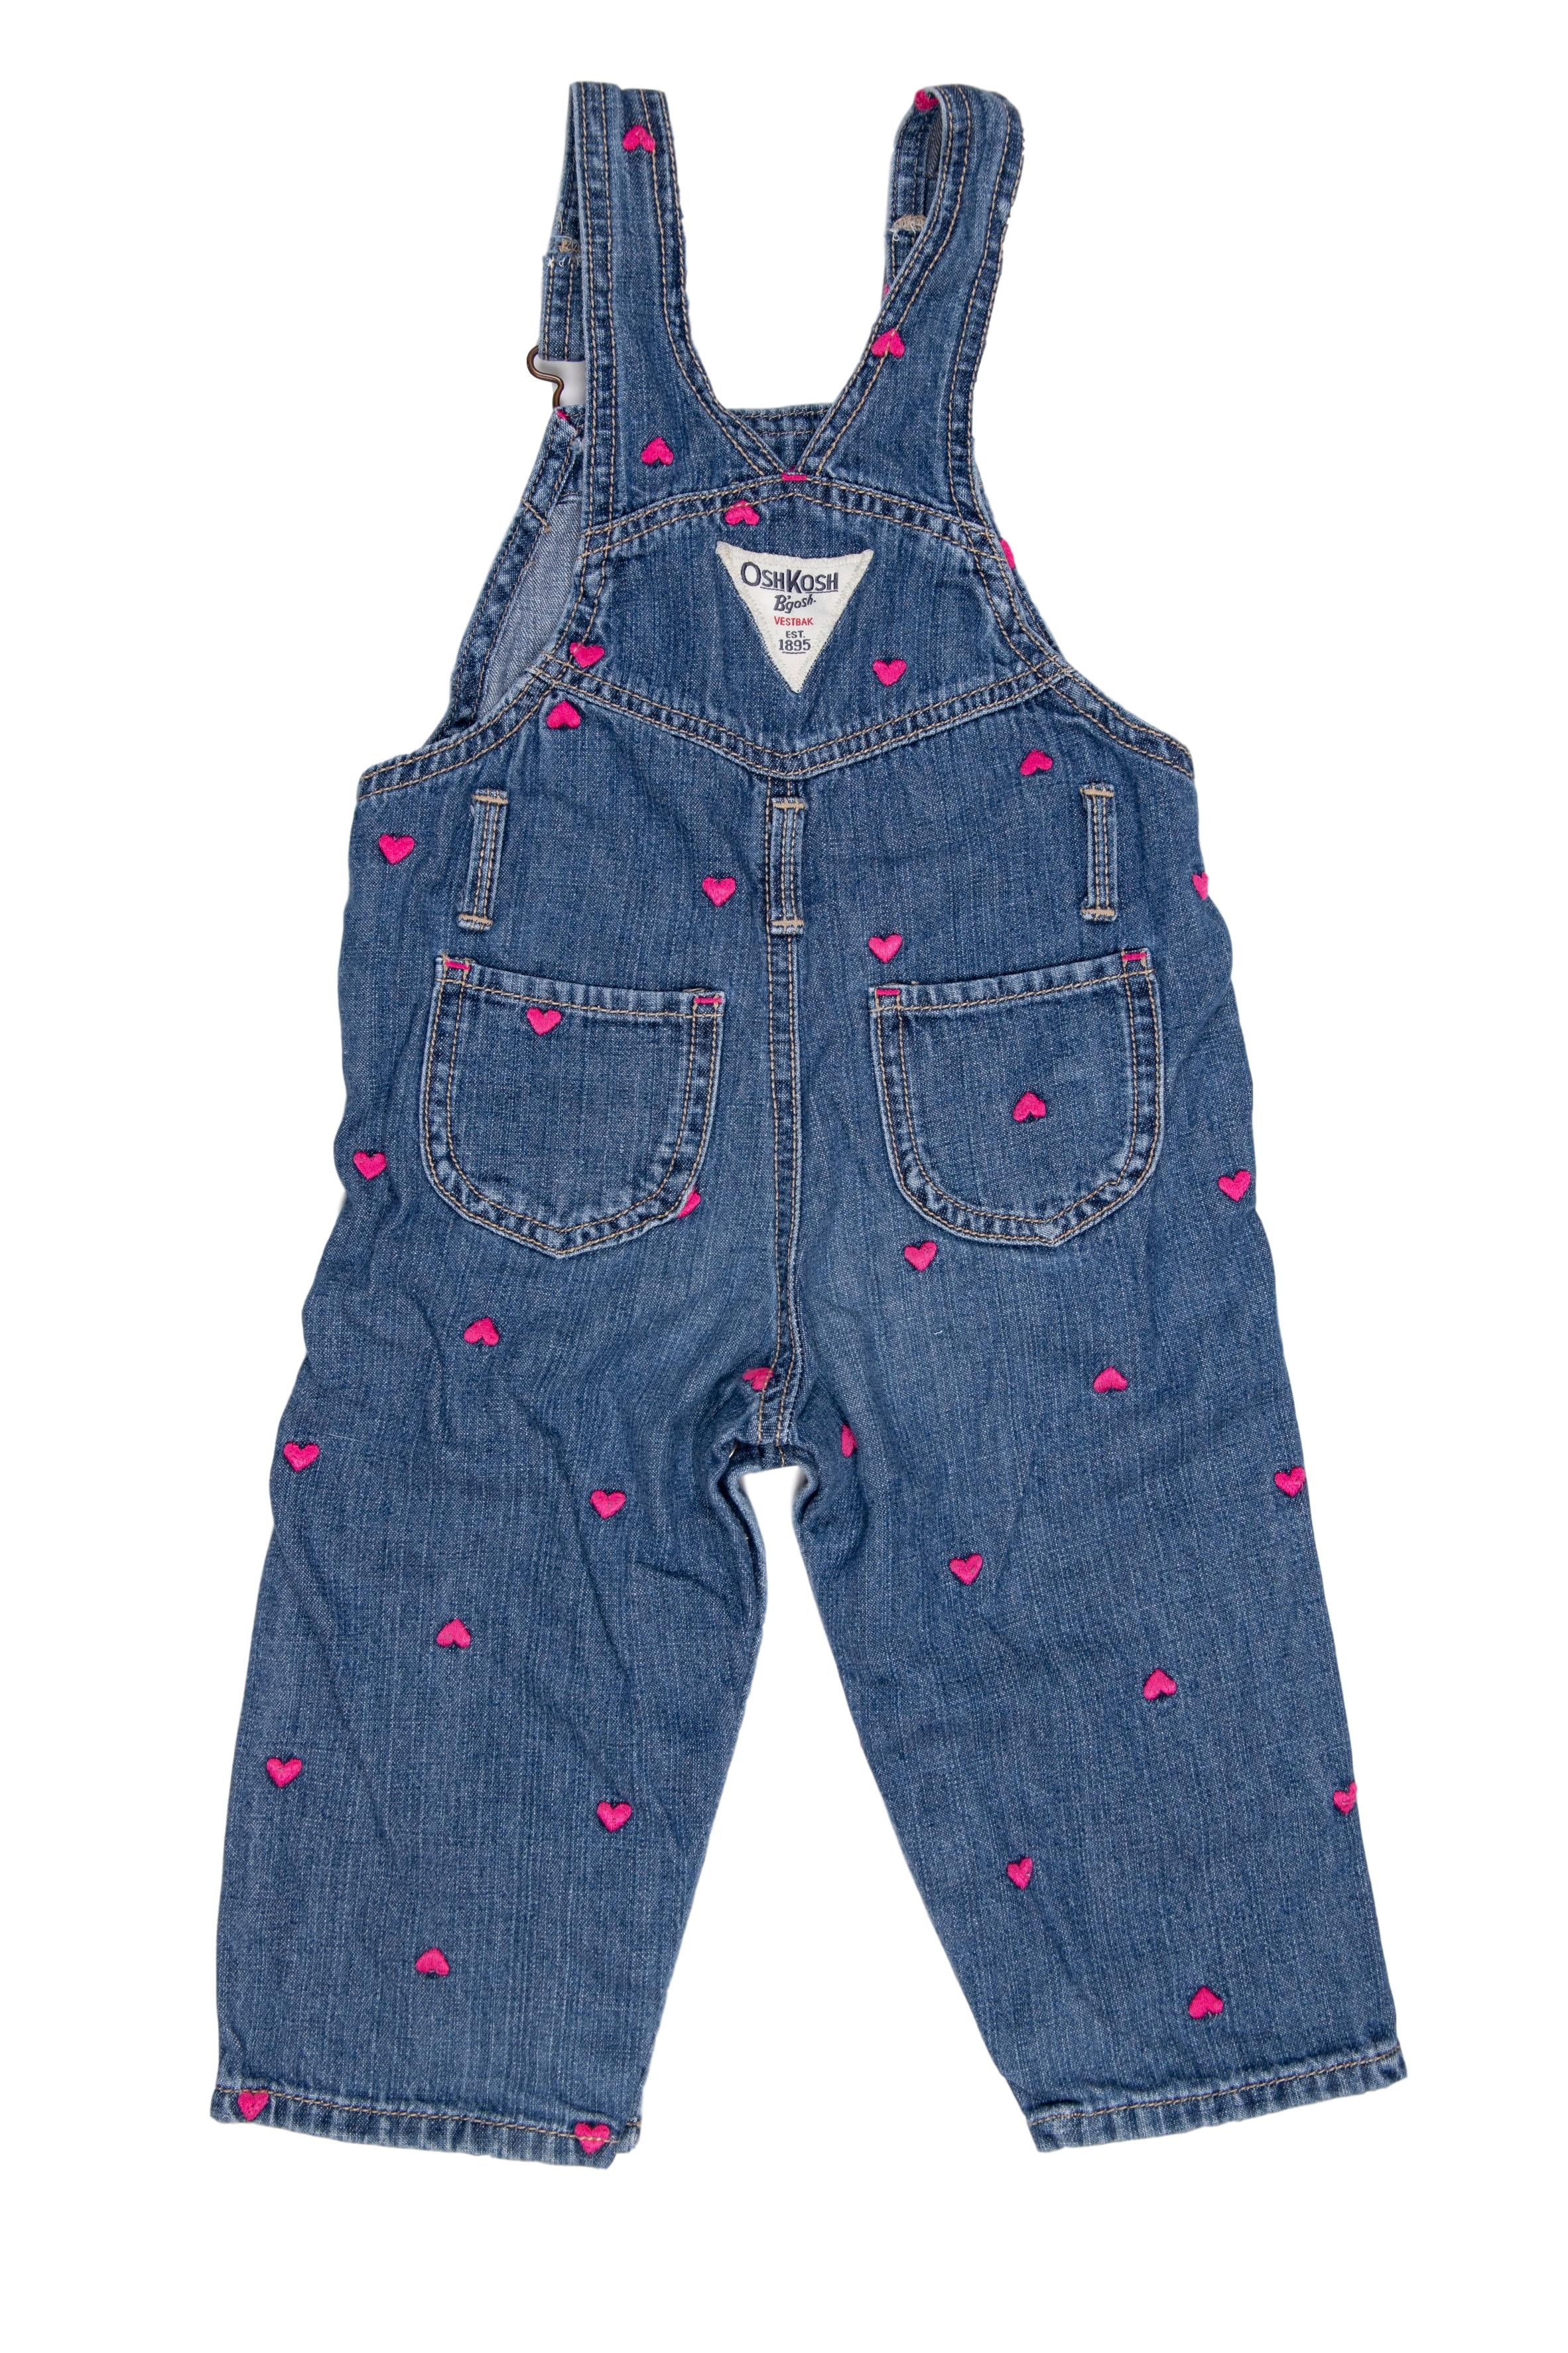 Overoll jean con corazones bodados, 100% algodón - OshKosh - Precio original S/ 140